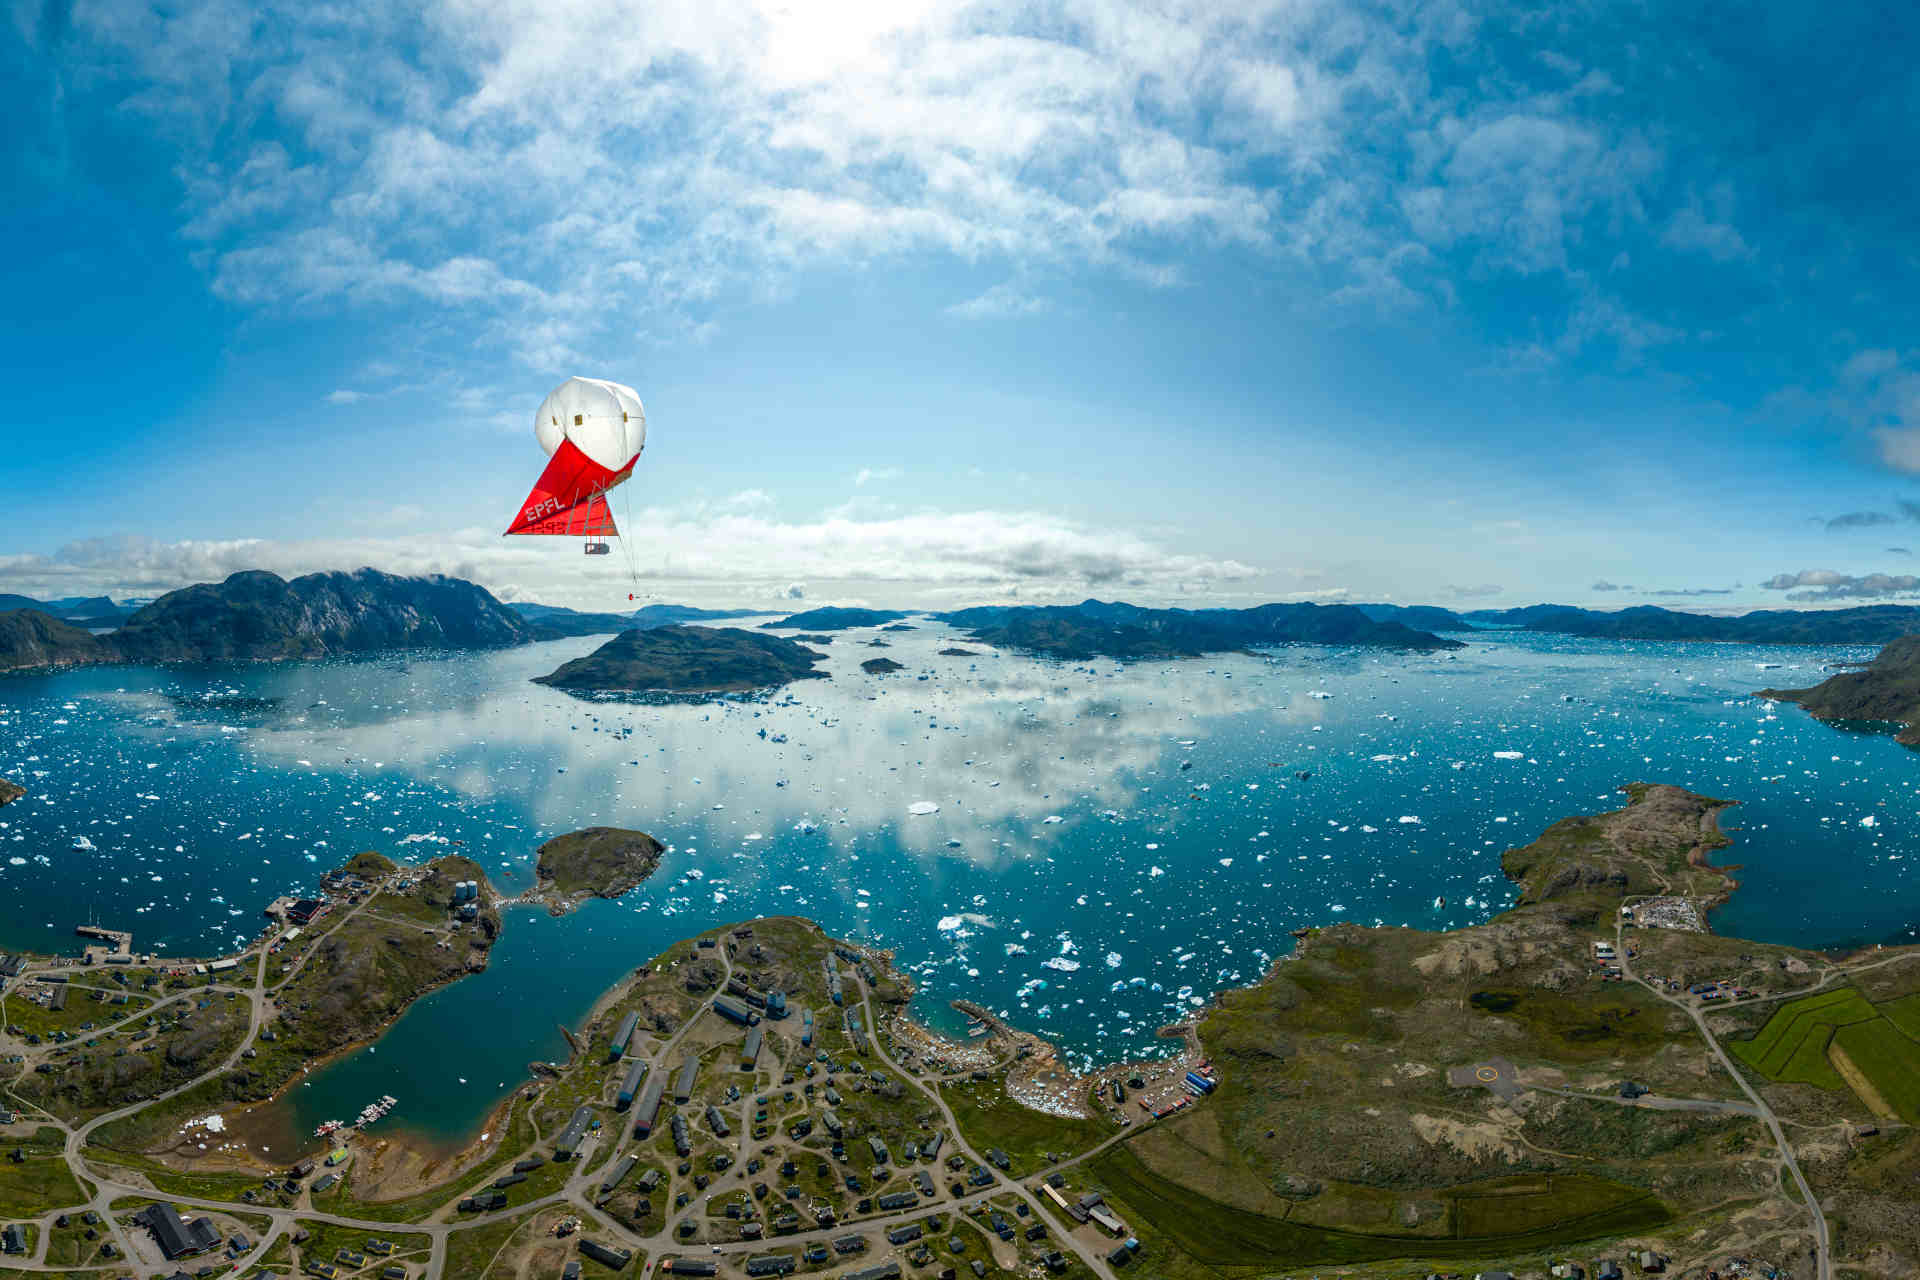 Ghiacciai: comprendere il cambiamento climatico studiando quello che avviene in Groenlandia